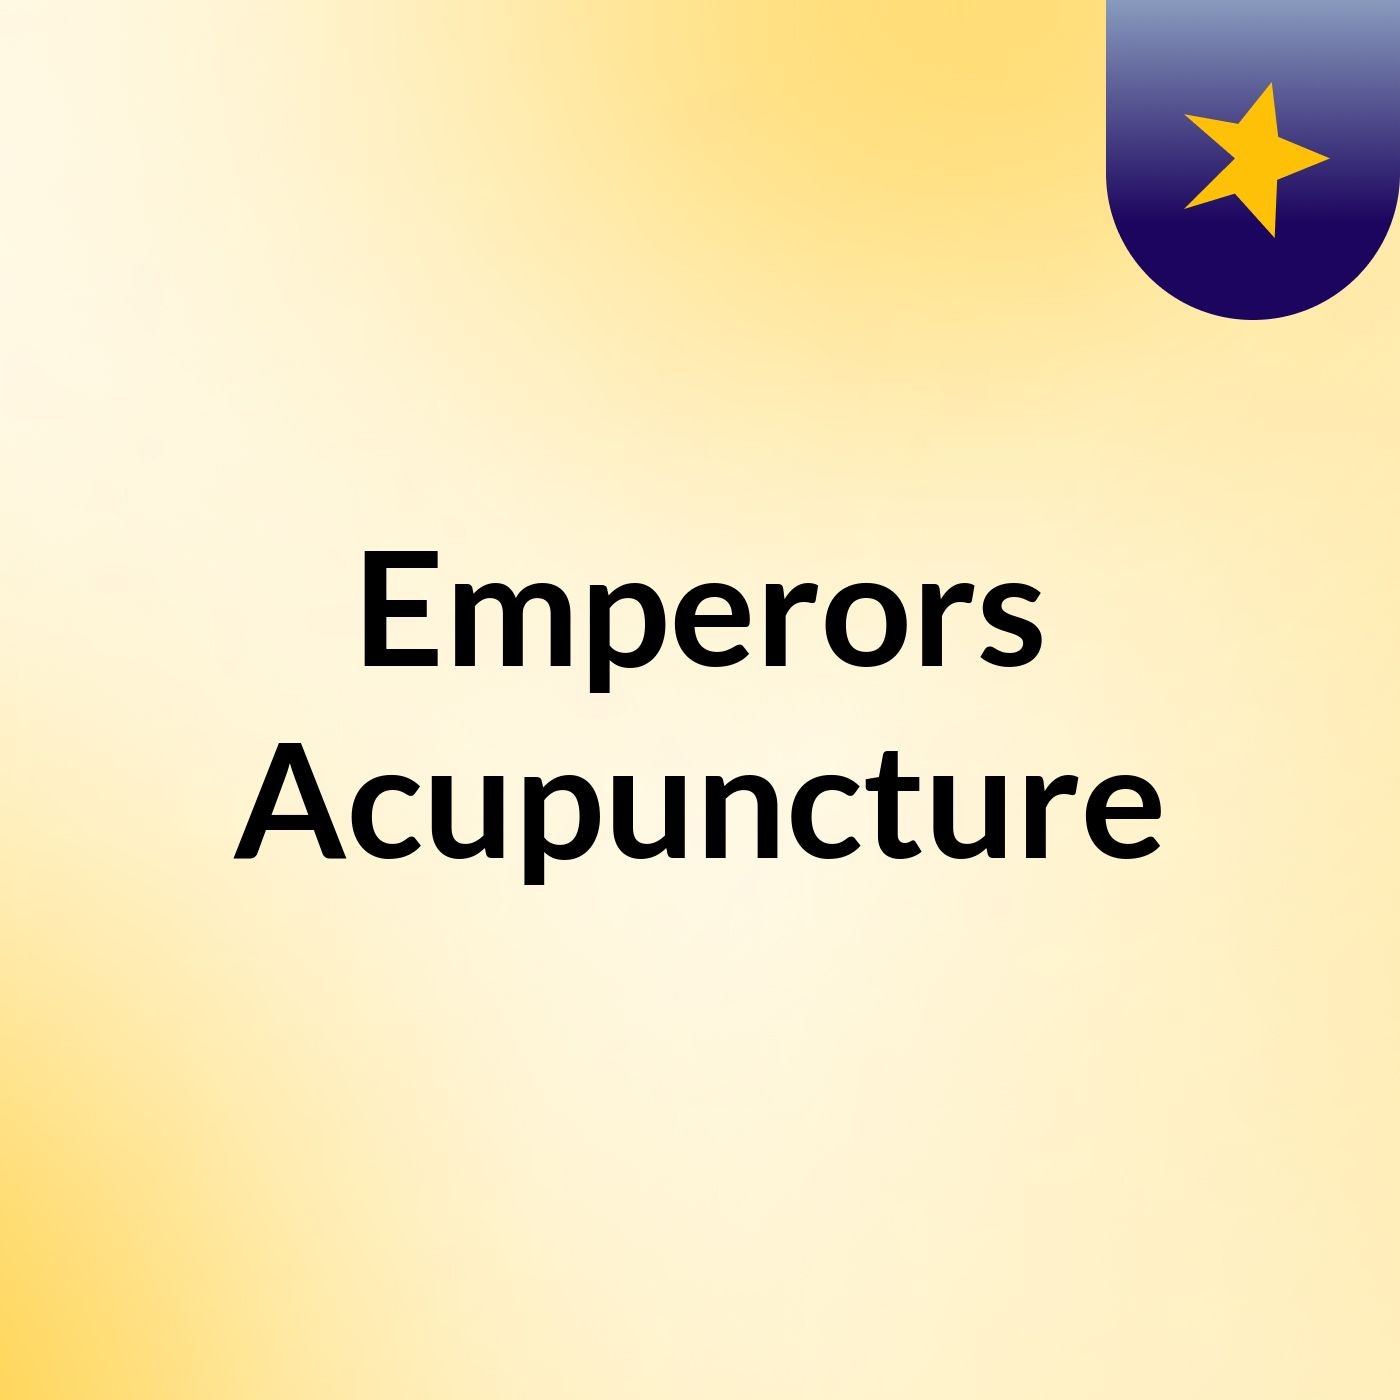 Emperors Acupuncture